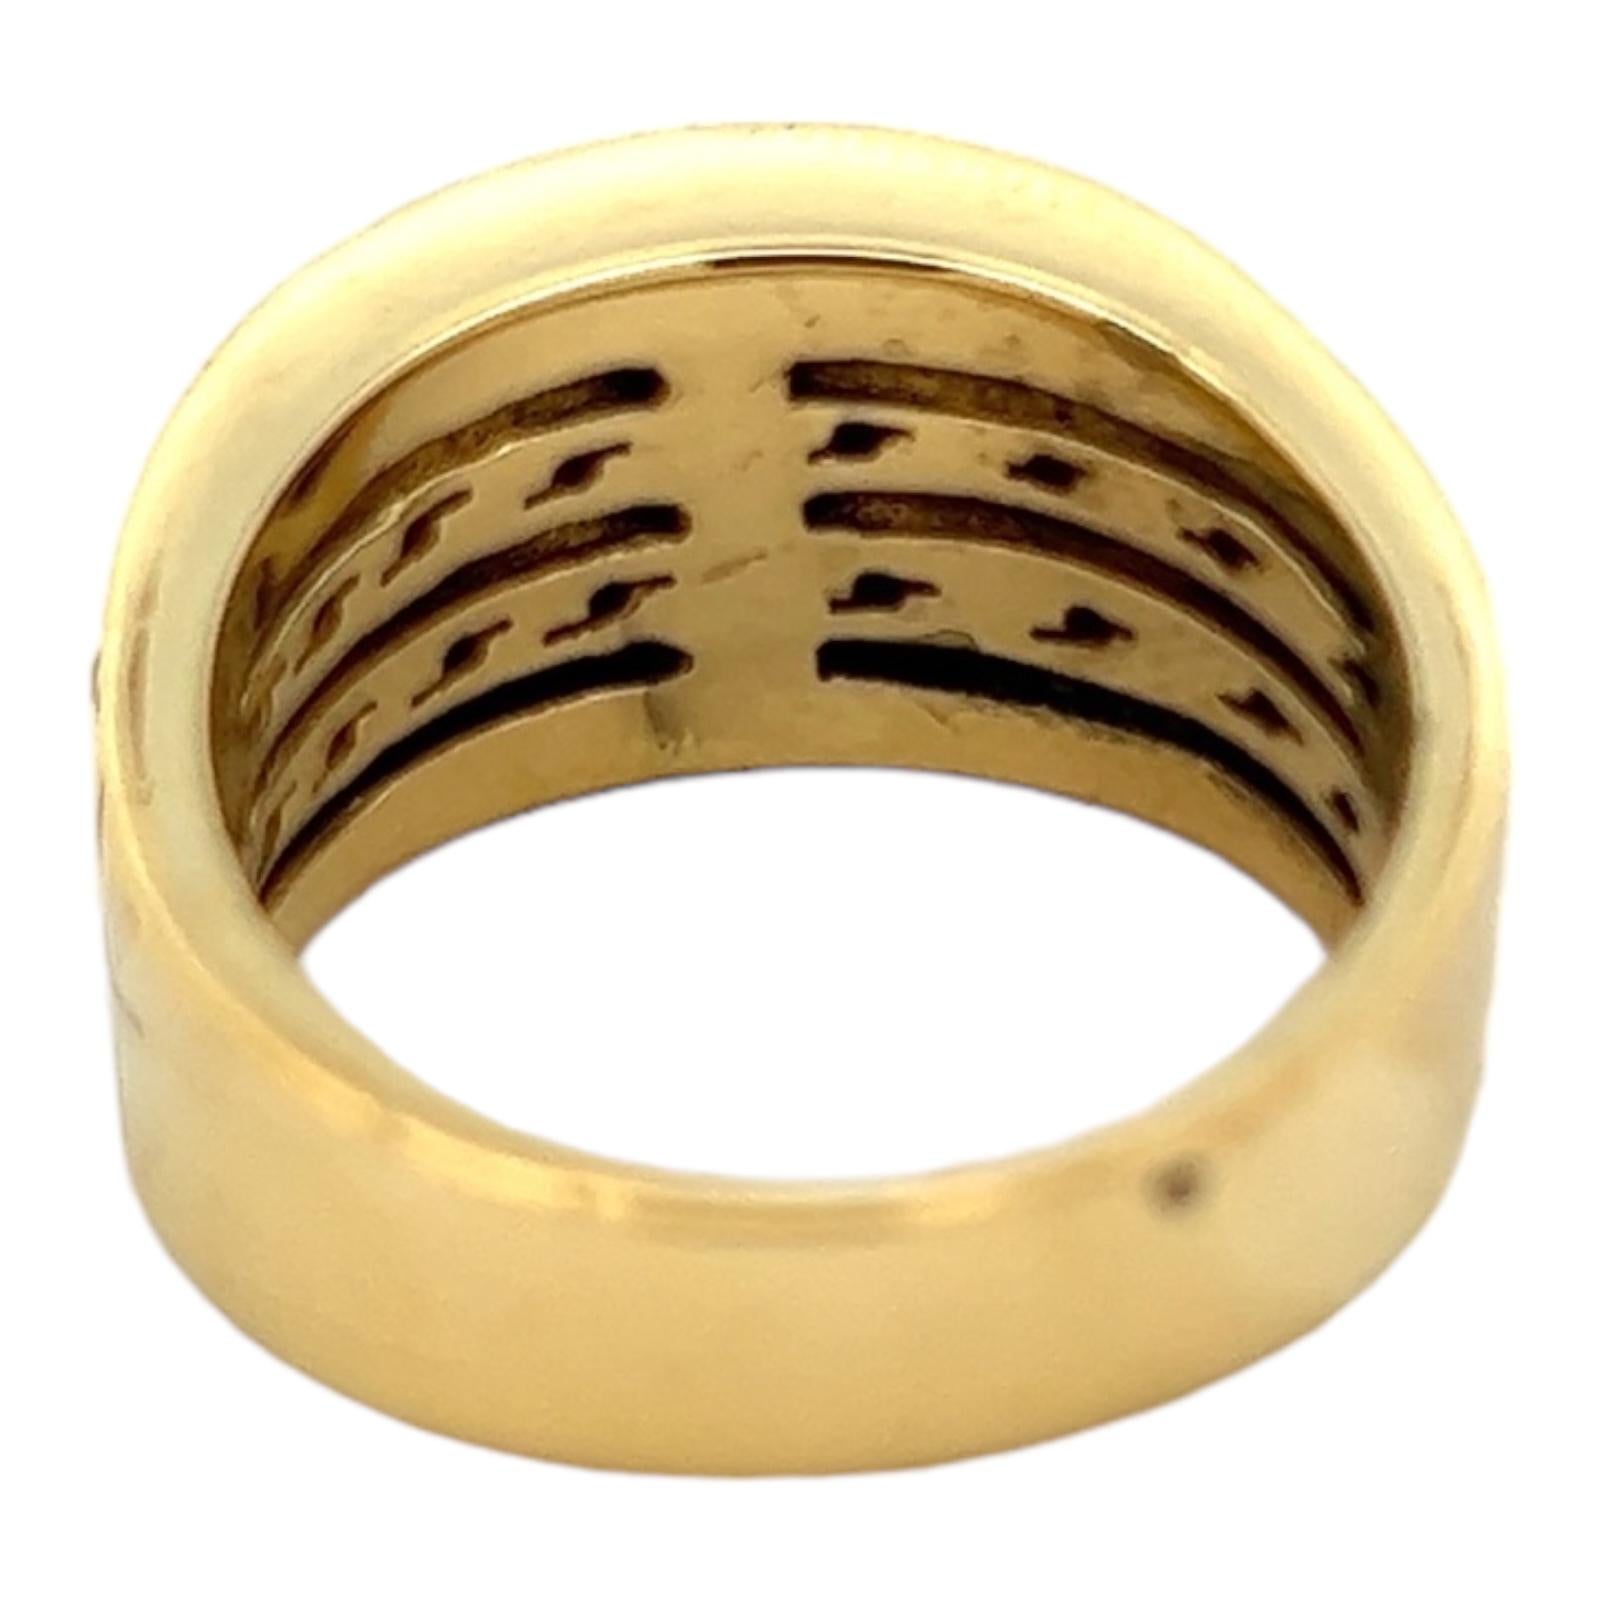 Porte-cigare en diamant réalisé en or jaune 18 carats texturé. Le bracelet comporte 36 diamants ronds de taille brillant pesant environ 0,76 CTW et classés de couleur G-I et de pureté SI. L'anneau mesure 12 mm de large et est actuellement de taille